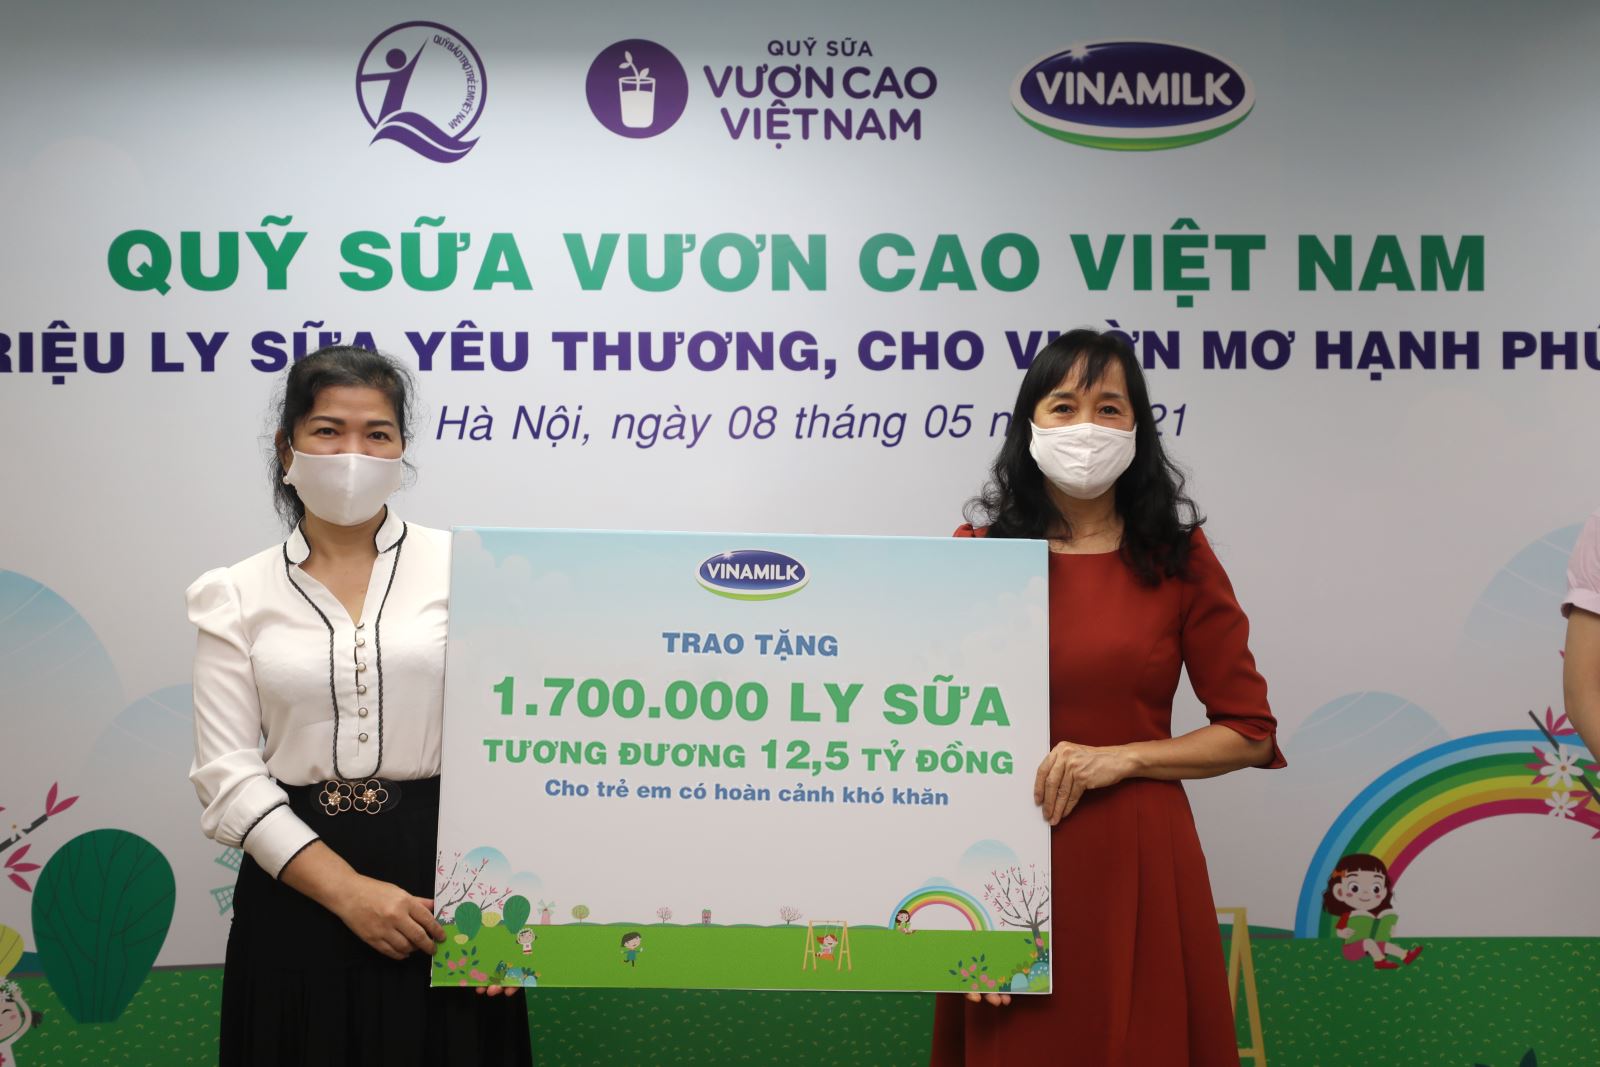 Năm 2021, 1,7 triệu ly sữa từ Quỹ sữa Vươn cao Việt Nam và Vinamilk sẽ đến với 19.000 trẻ em khó khăn